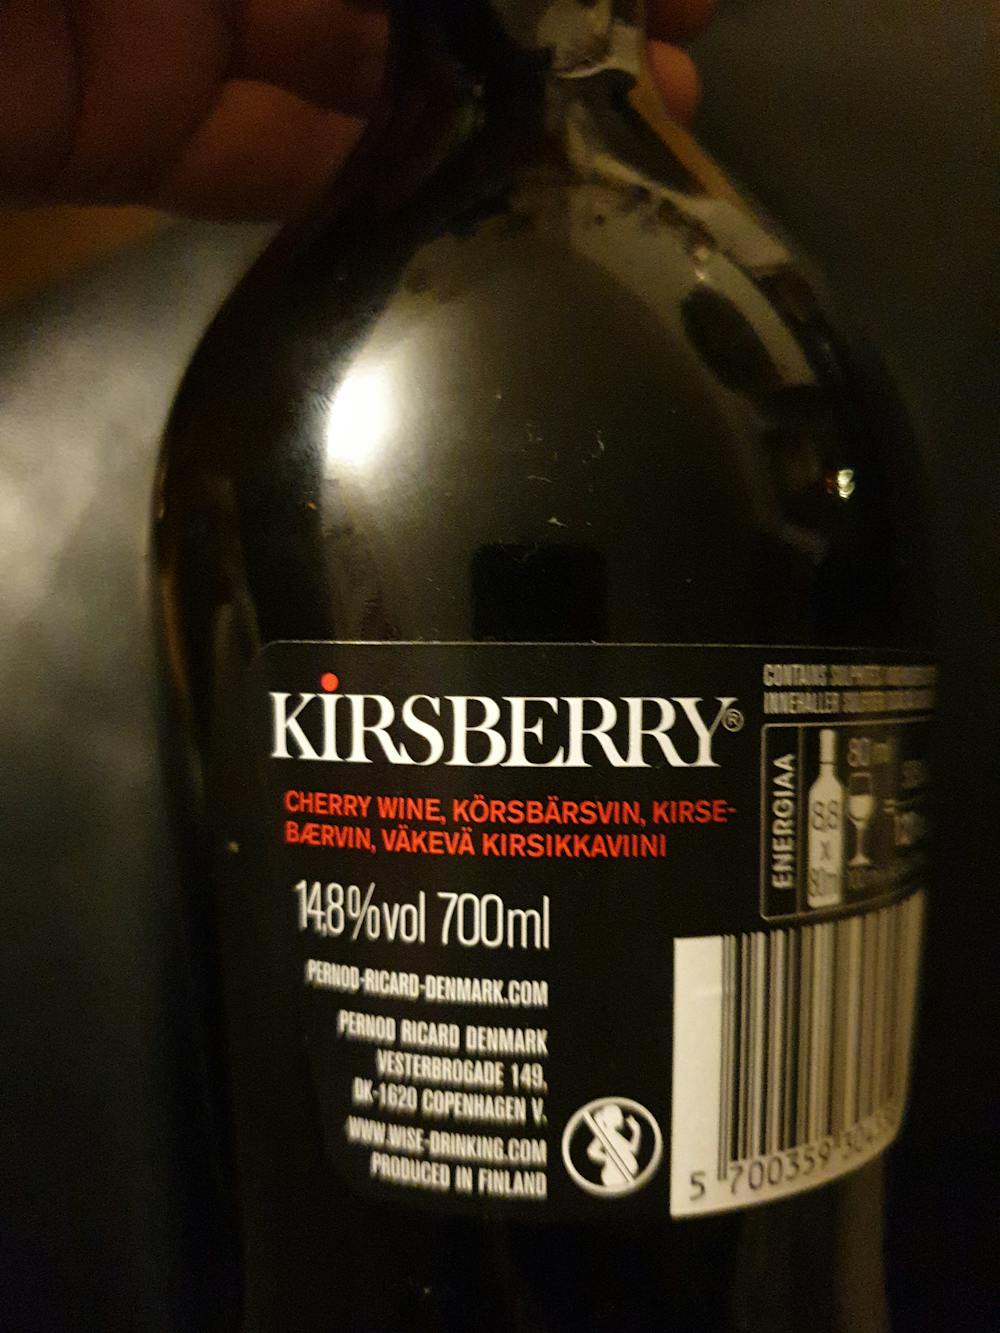 Ingrediensliste - Kirsberry, Cherry Specialty, Pernod Ricard Dennart